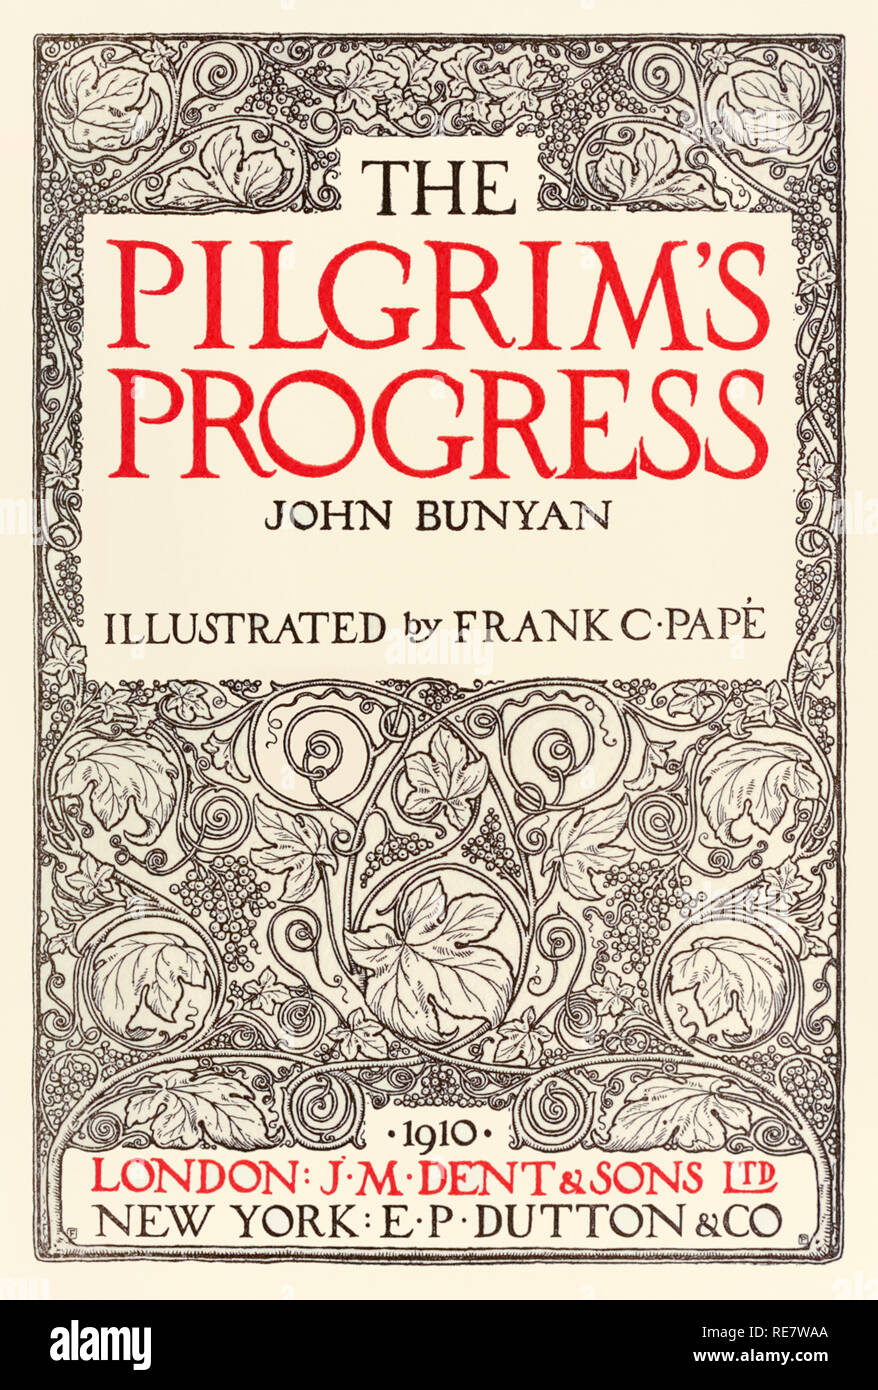 Page de titre de "The Pilgrim's Progress' de John Bunyan (1628-1688) conçu par Frank C. Papé (1878-1972) et publié par J. M. Dent en 1910. Voir plus d'informations ci-dessous. Banque D'Images